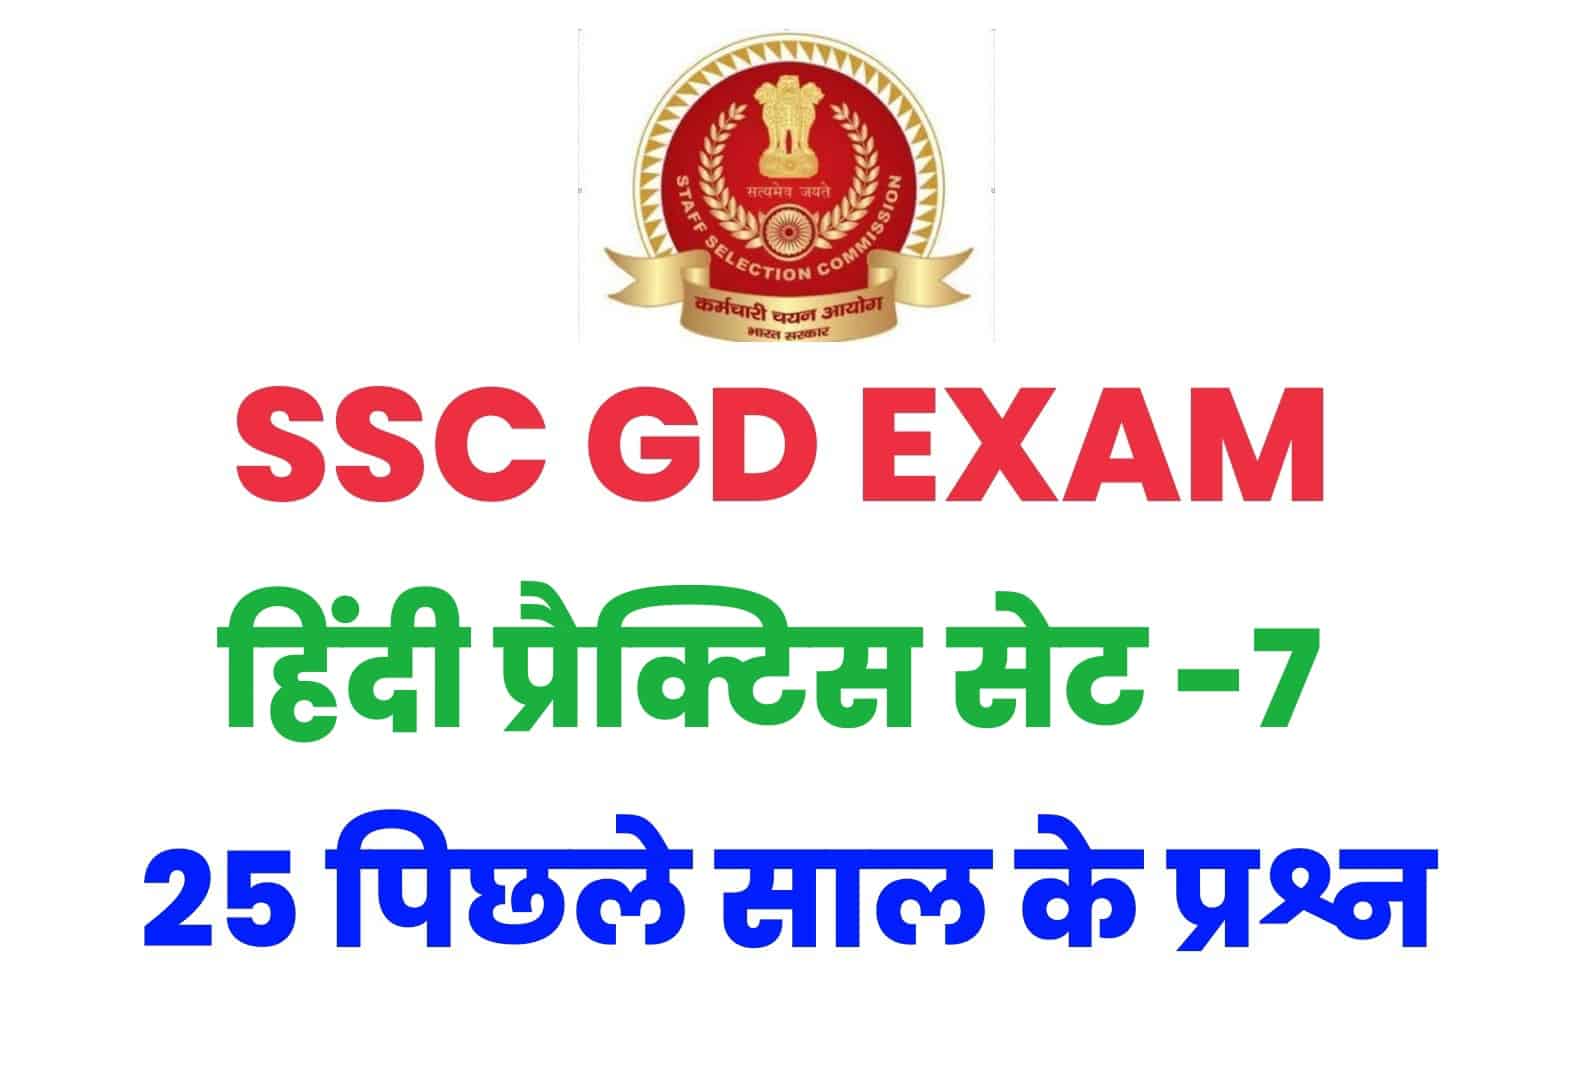 SSC GD हिंदी प्रैक्टिस सेट -7 : परीक्षा में आ सकते हैं ये प्रश्न, कर लें अध्ययन